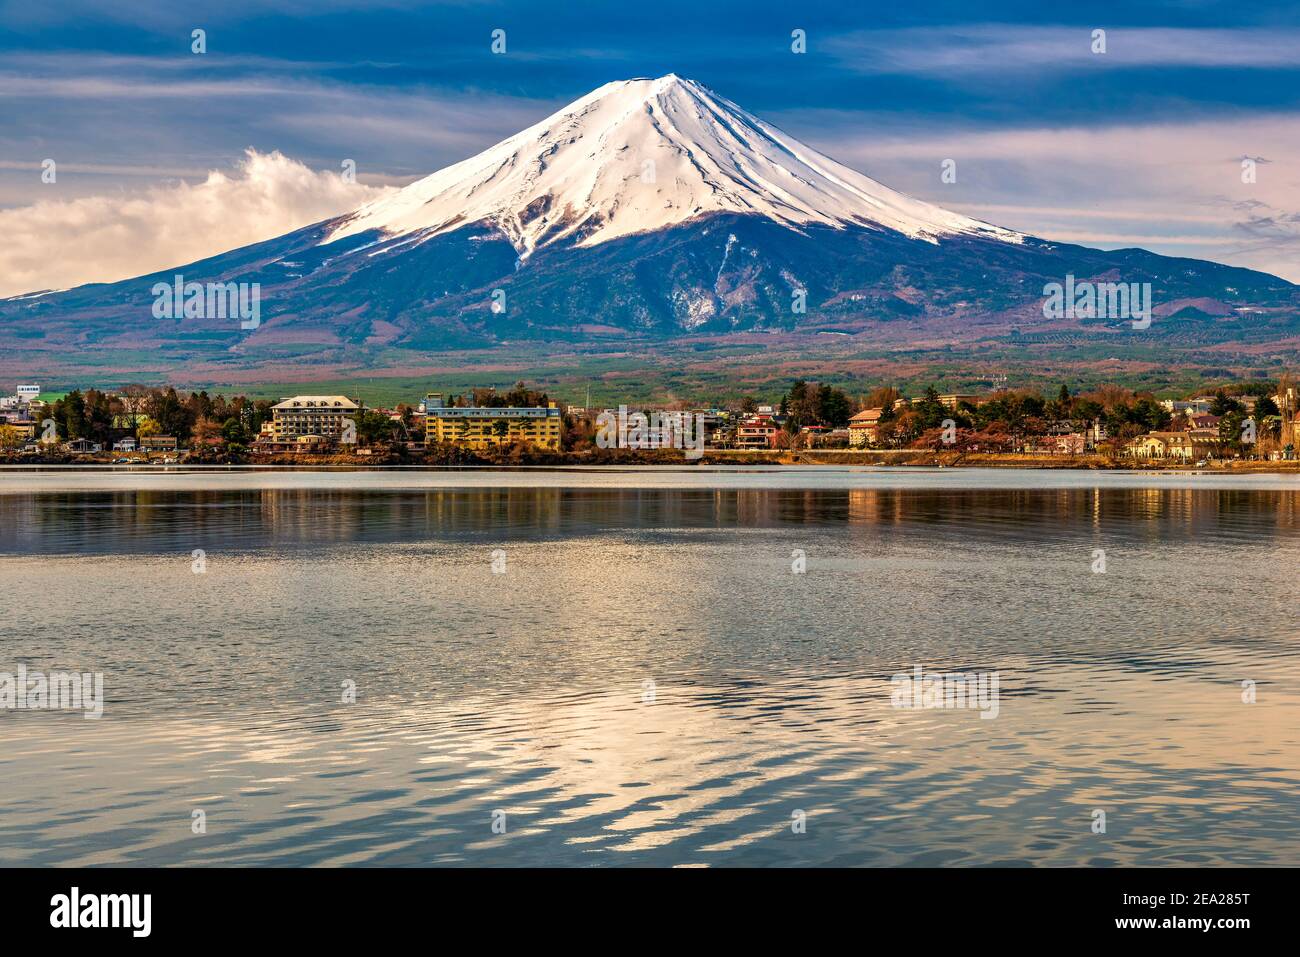 Lake Kawaguchi with the iconic Mount Fuji, Fujikawaguchiko, Honshu, Japan Stock Photo